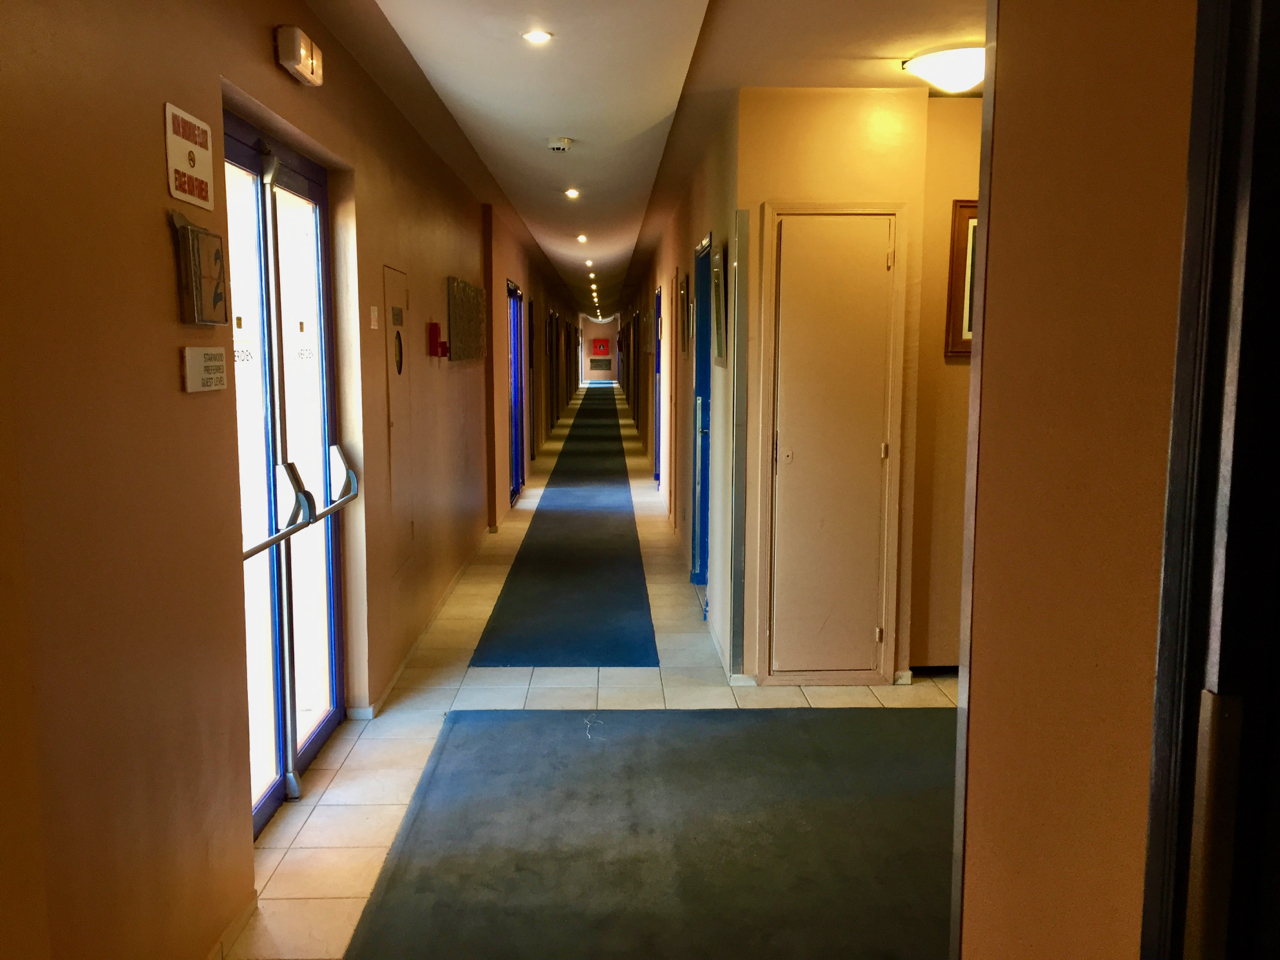 a hallway with doors and a door